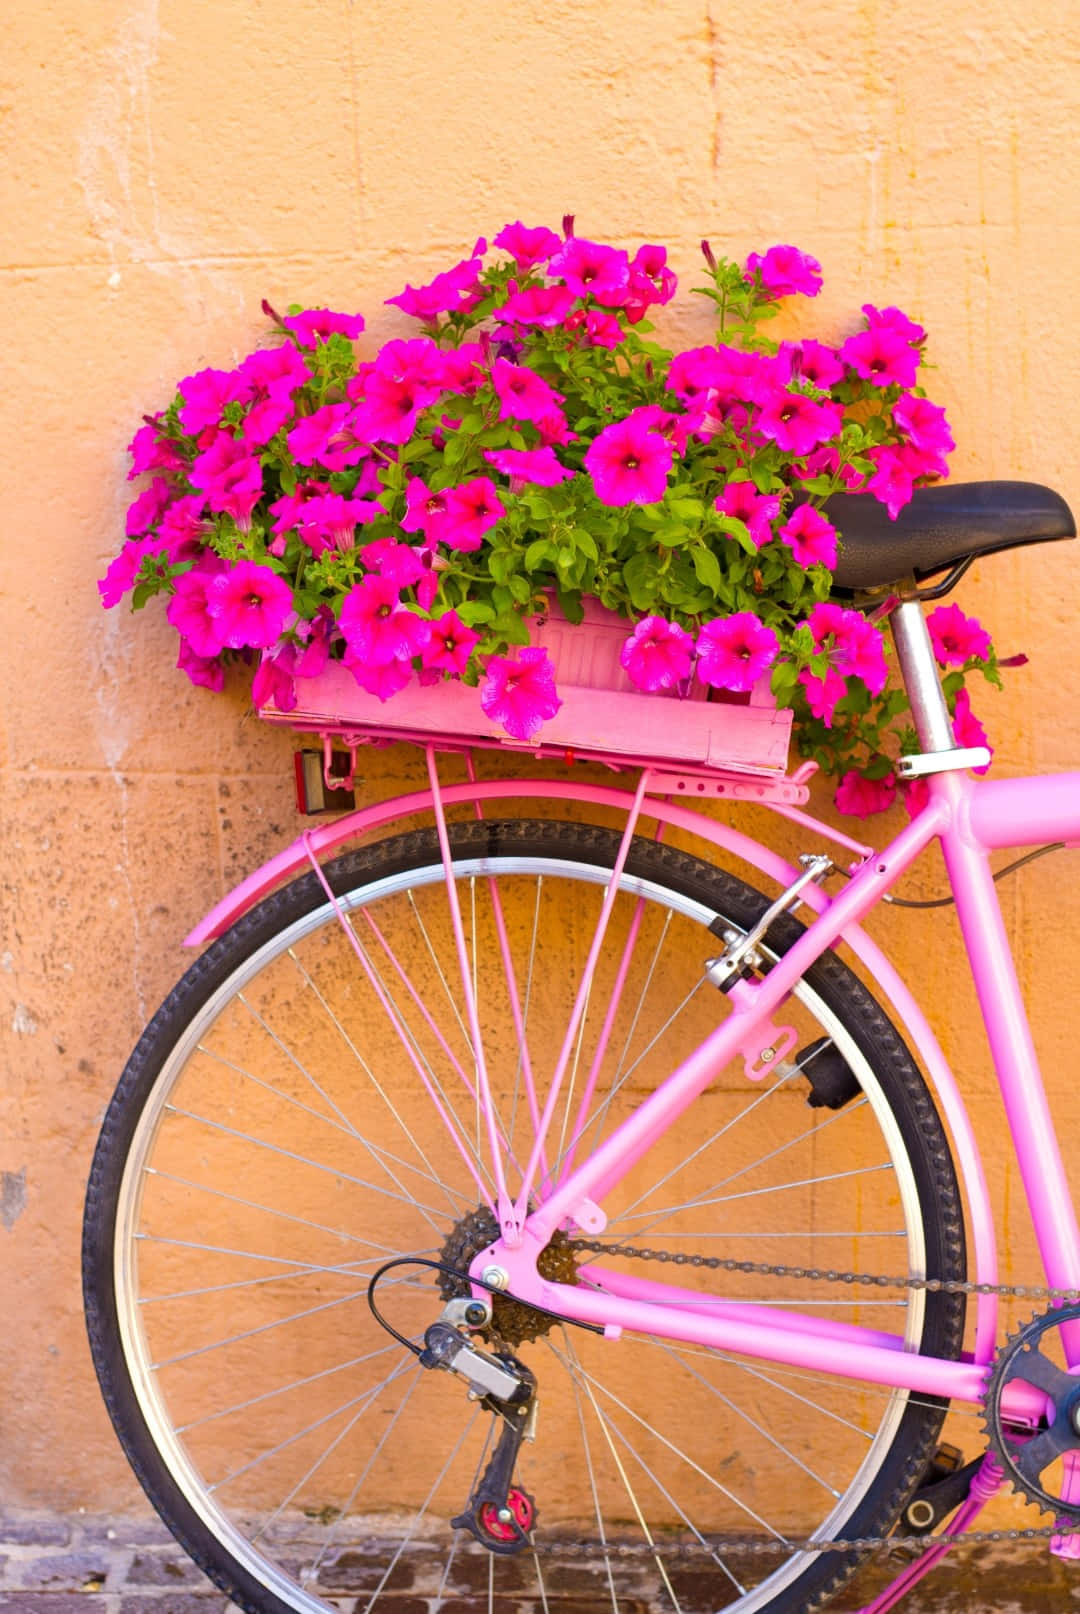 Pink Bicycle With Flower Basket Against Orange Wall.jpg Wallpaper